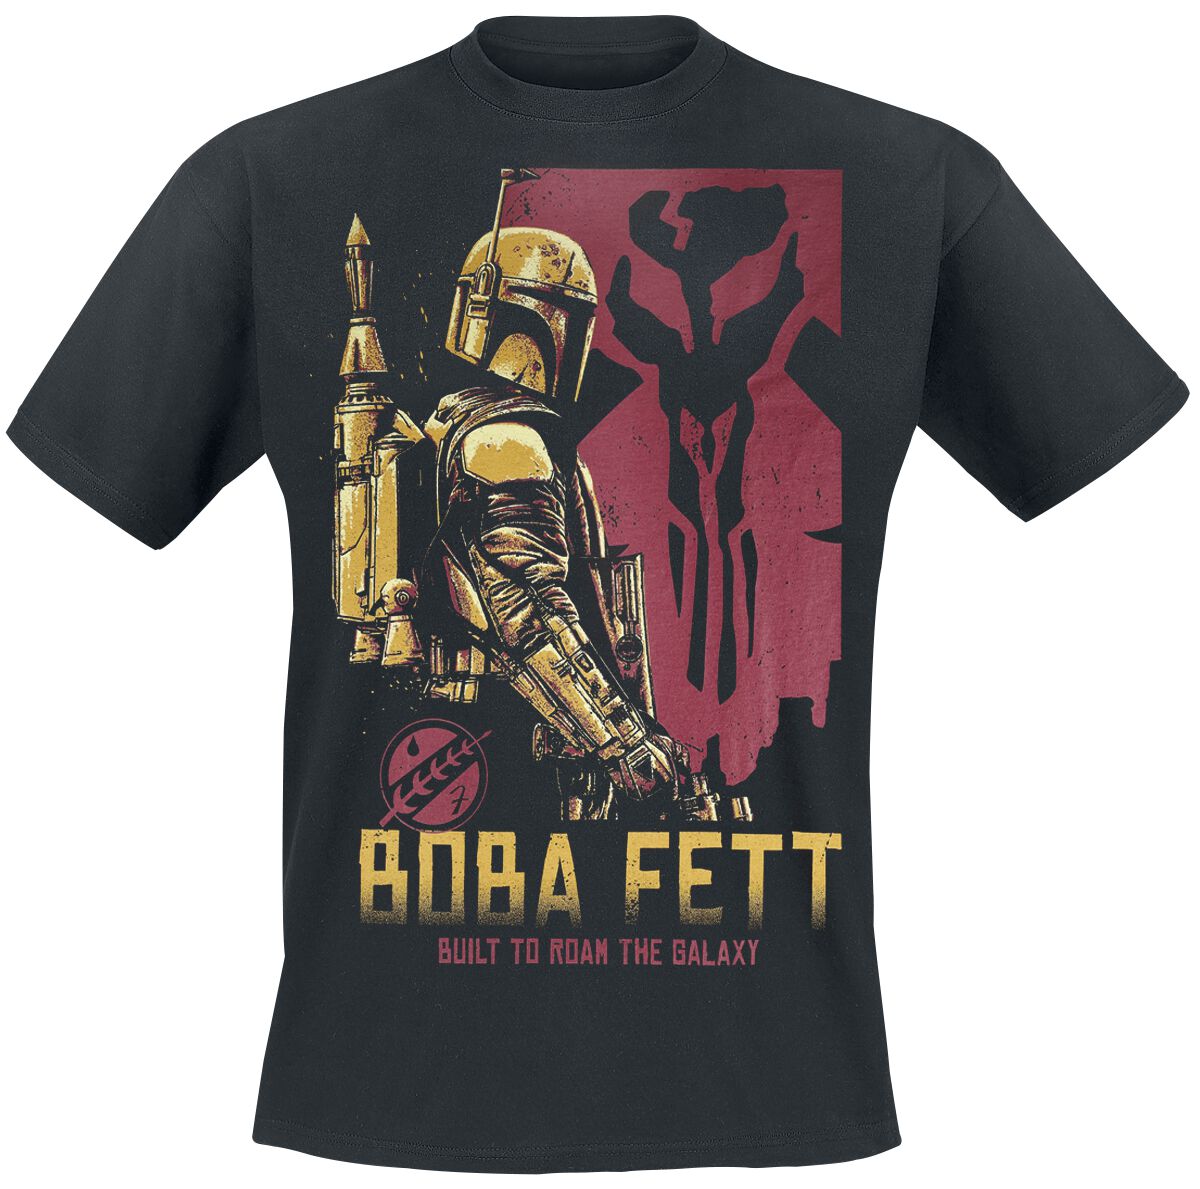 Star Wars T-Shirt - The Book Of Boba Fett - Roam The Galaxy - S bis 4XL - für Männer - Größe M - schwarz  - EMP exklusives Merchandise!